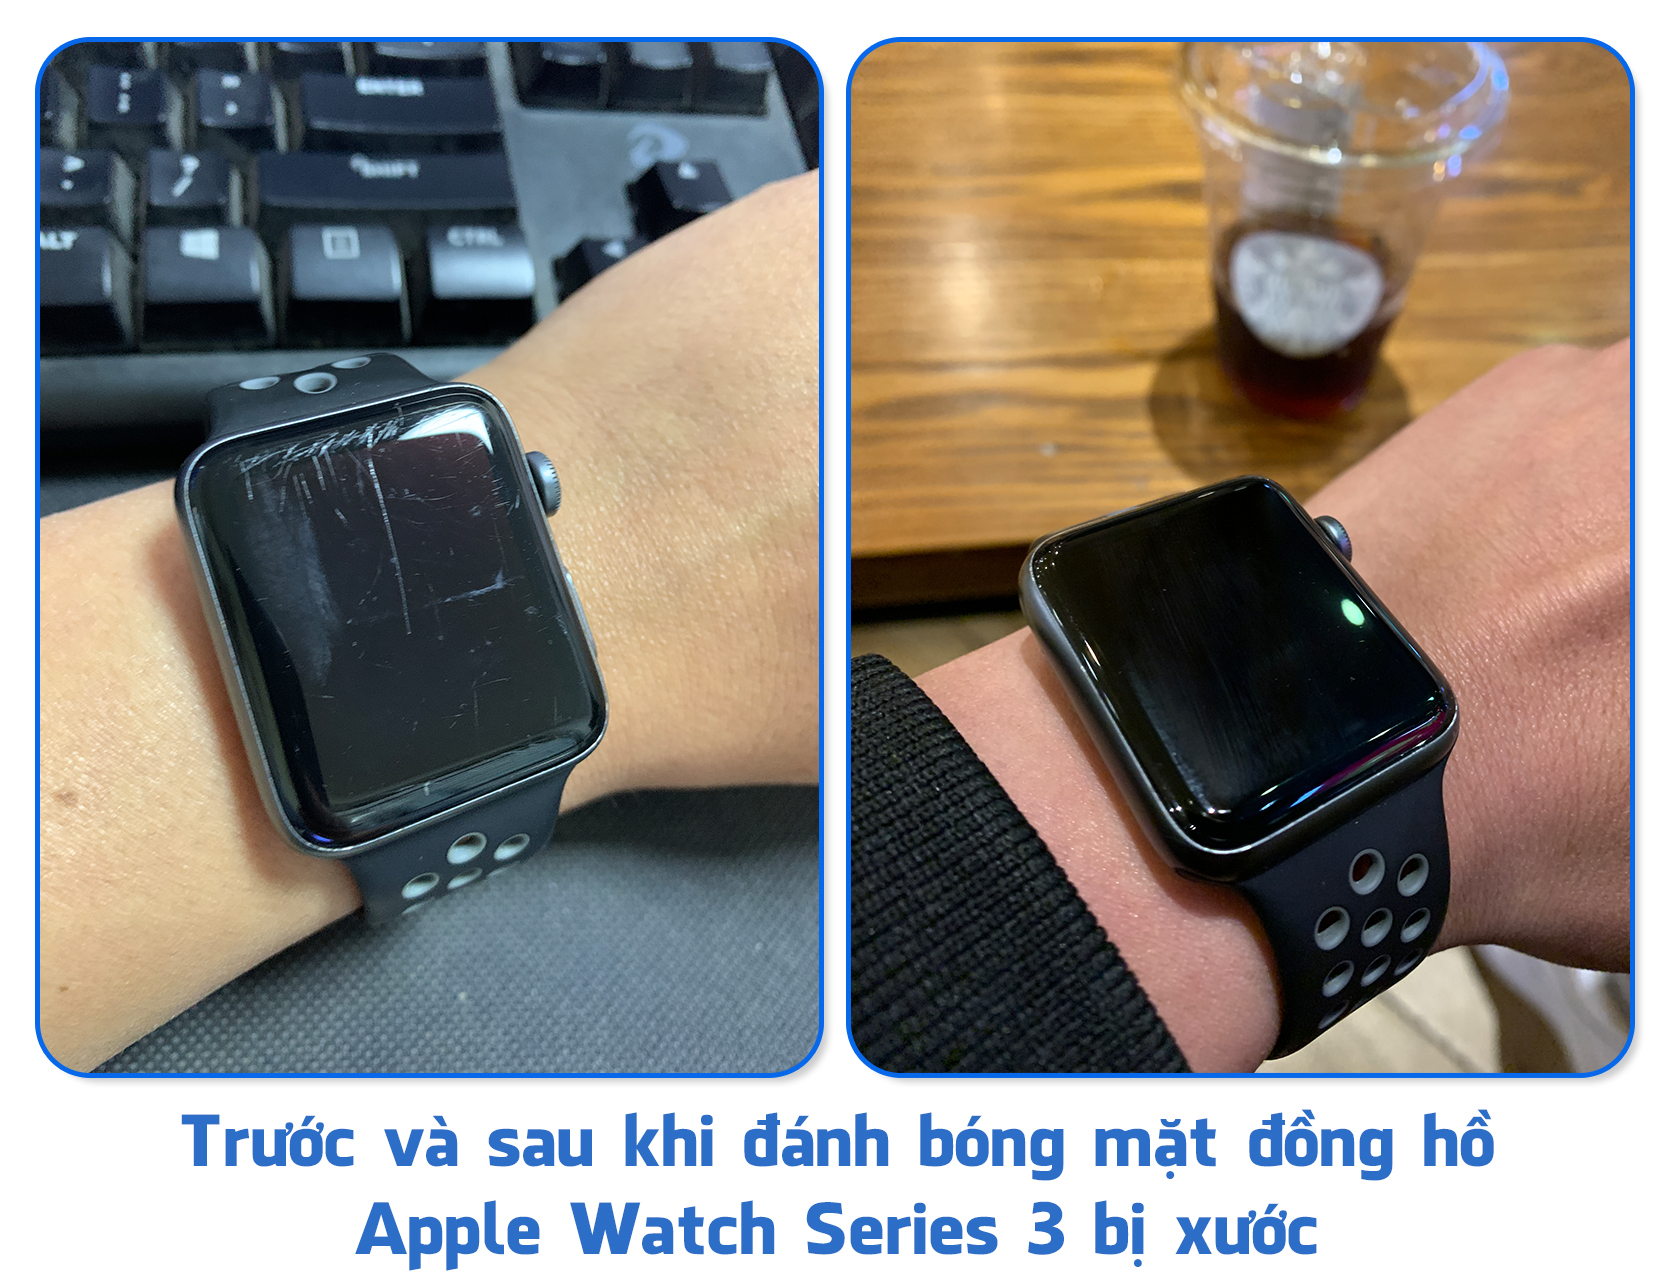 Đánh bóng mặt đồng hồ Apple Watch, khắc phục tình trạng mặt đồng hồ bị xước.